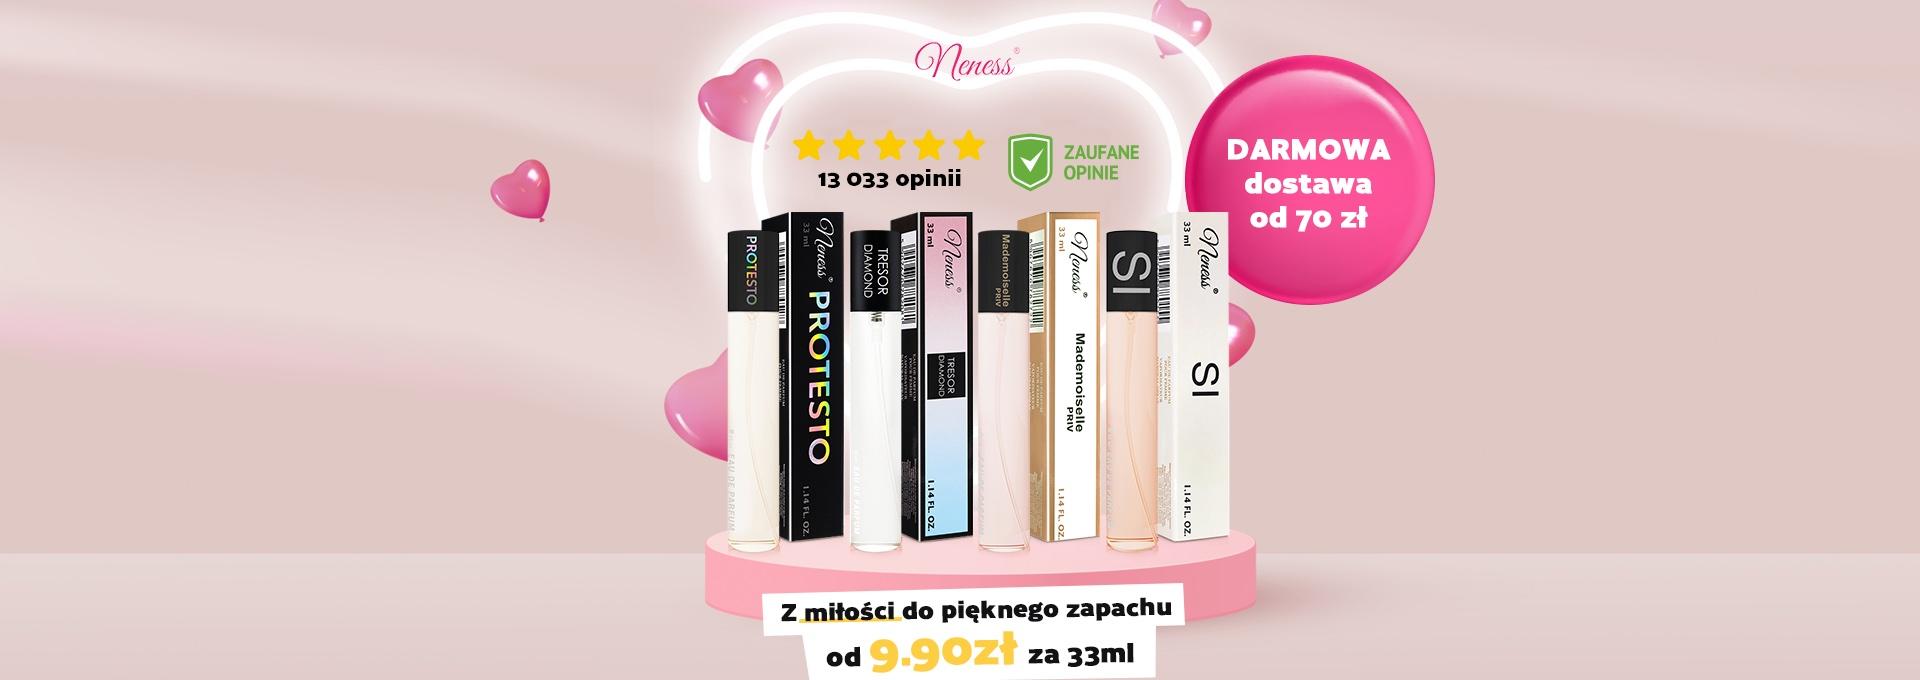 Walentynki w Neness - Darmowa dostawa perfum 33 ml marki Neness przy zakupie za minimum 70 zł